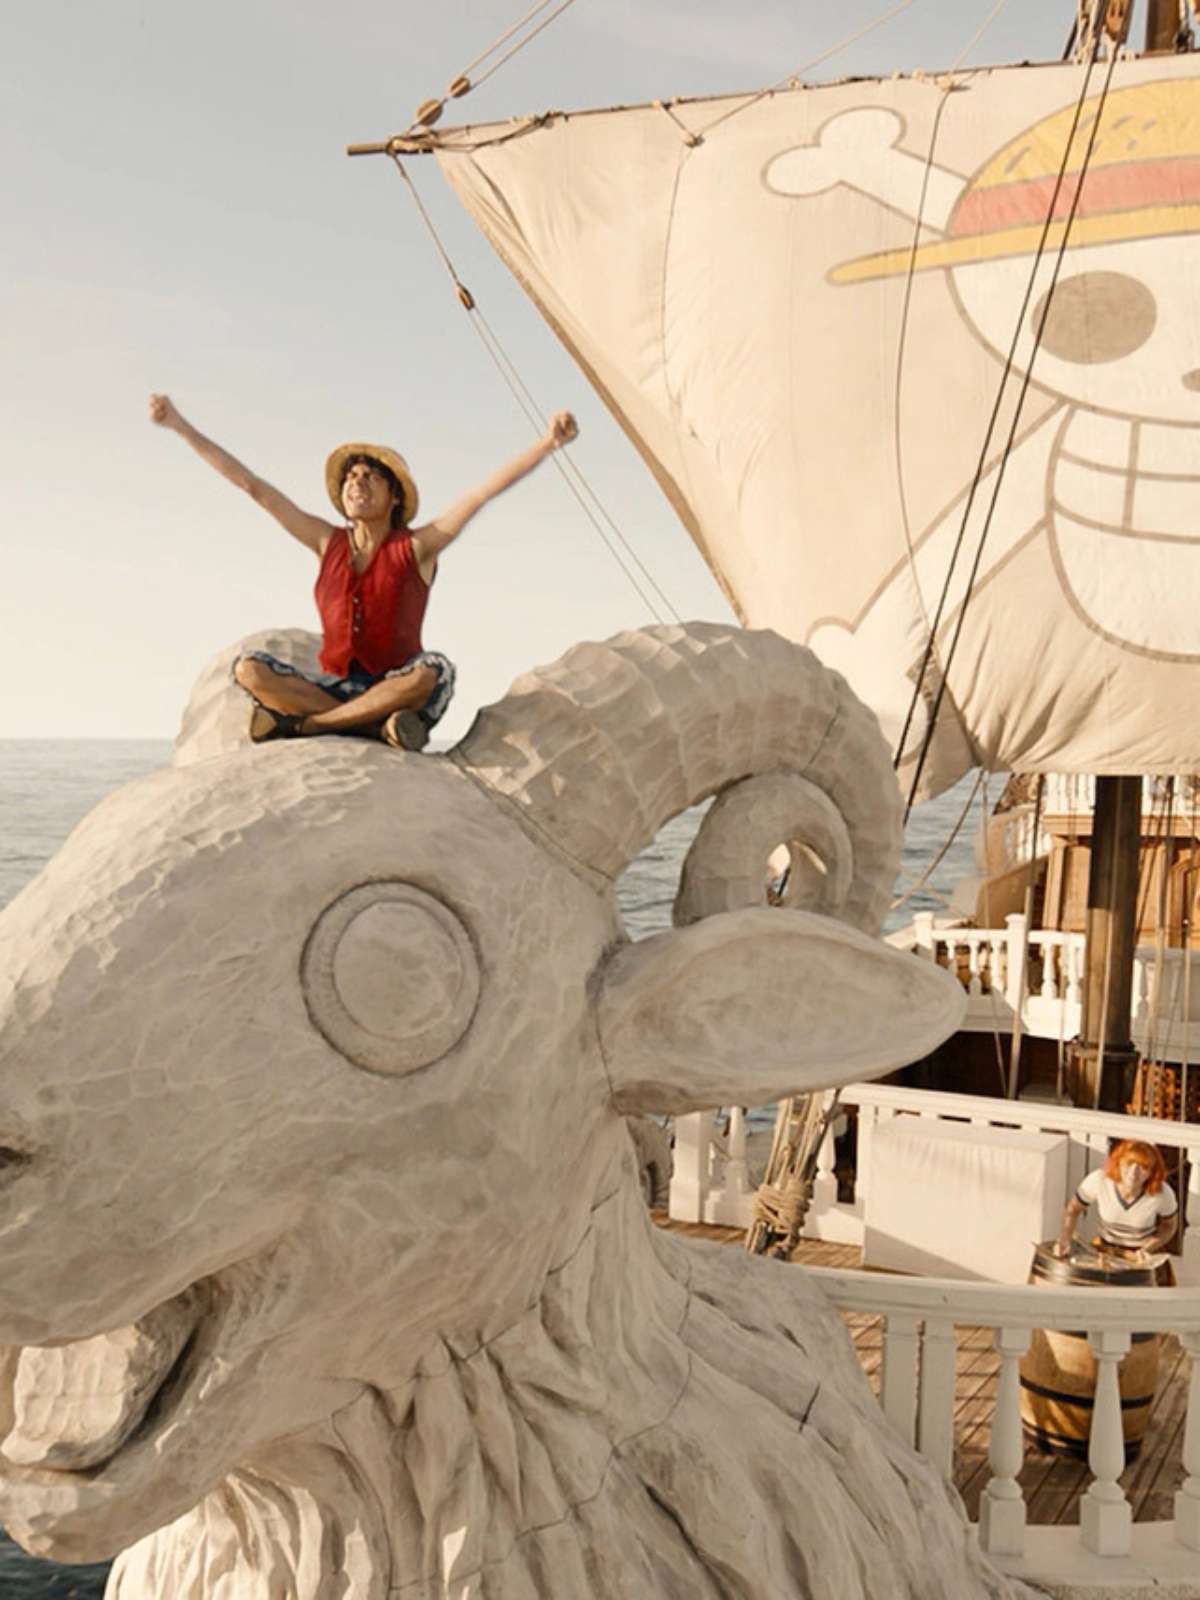 One Piece: Netflix divulga primeiro trailer e divulga data de